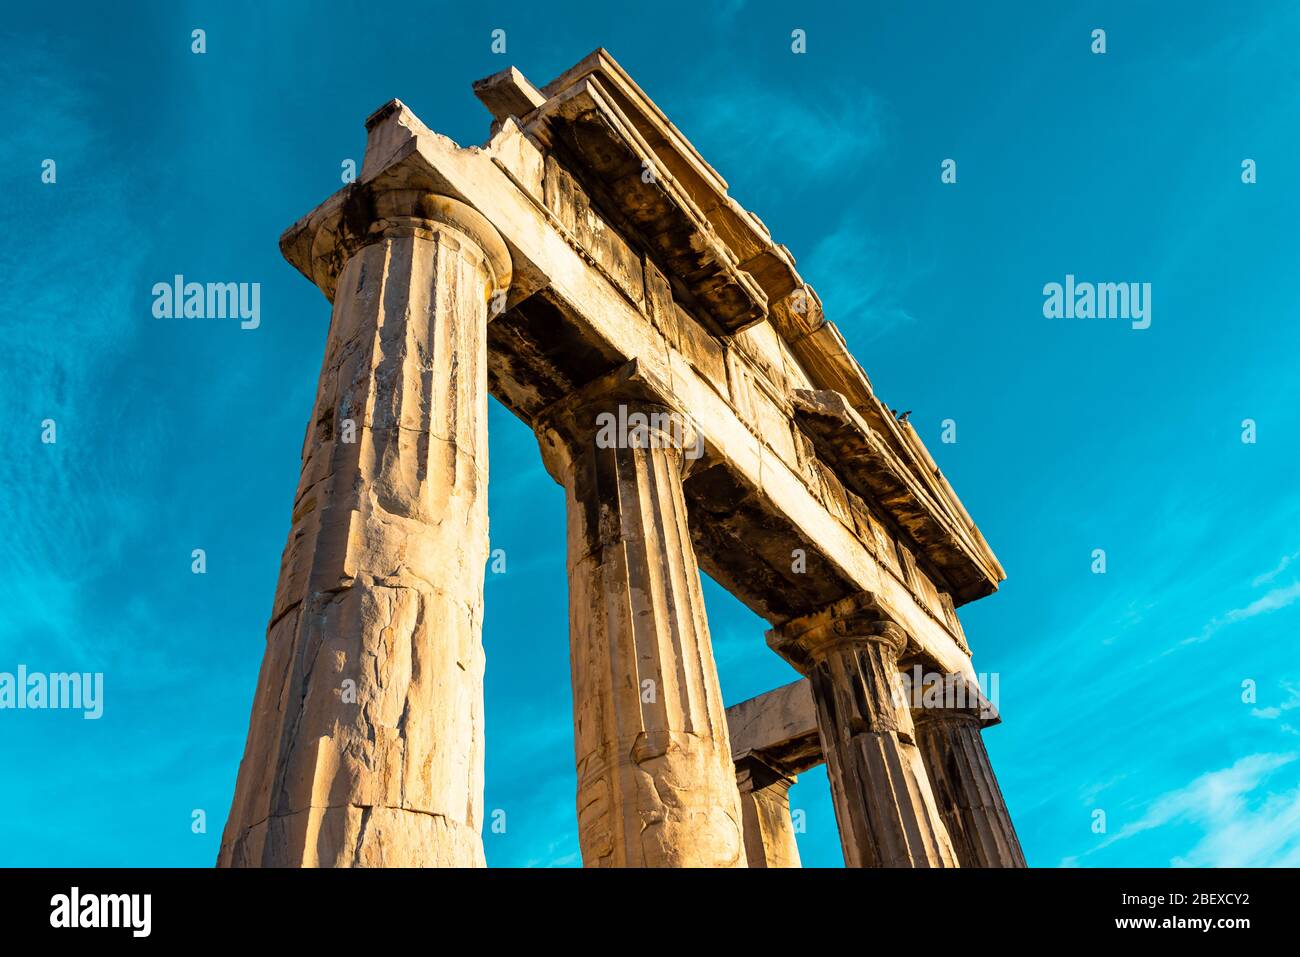 Vue à angle bas d'une arche grecque isolée sur le ciel bleu clair, Athènes, Grèce Banque D'Images